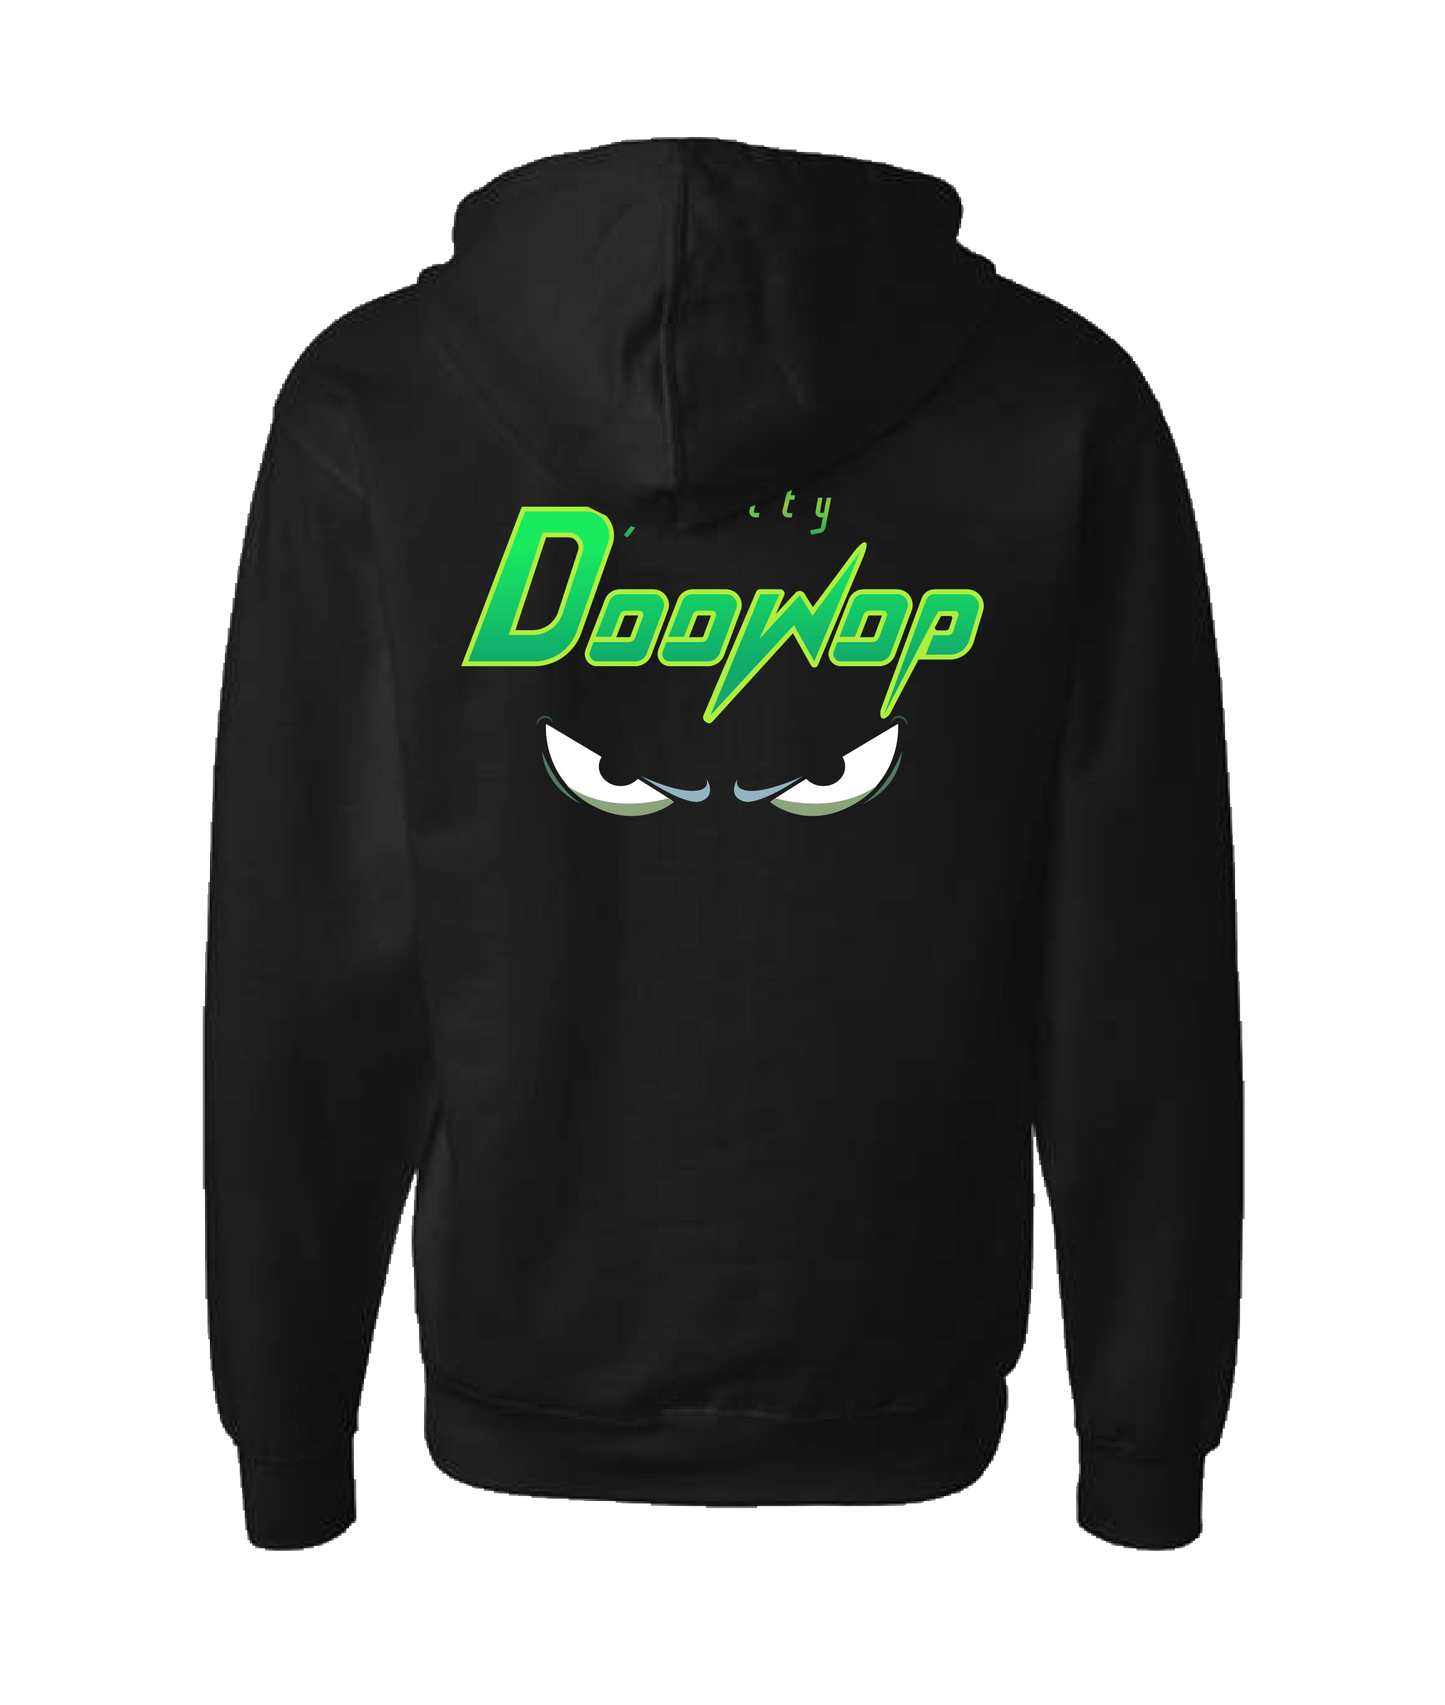 Scotty Doowop - Logo - Black Zip Up Hoodie